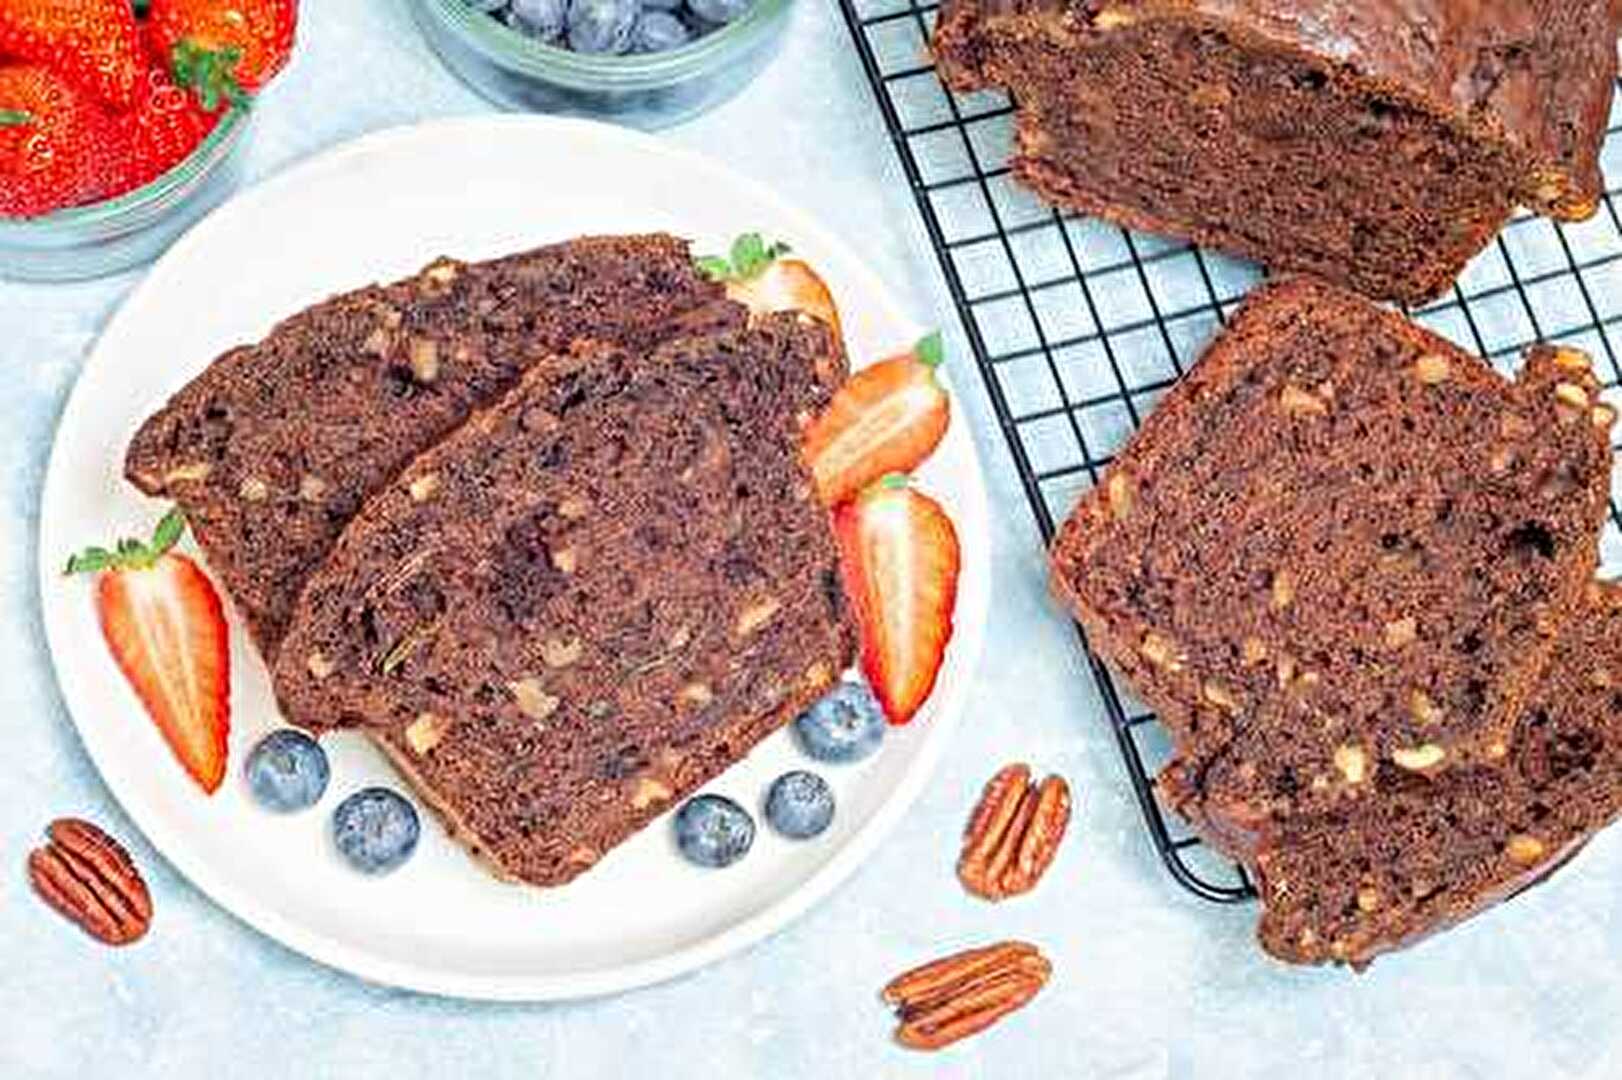 Cake aux courgettes, chocolat et noix de pécan - Une recette gourmande et surprenante